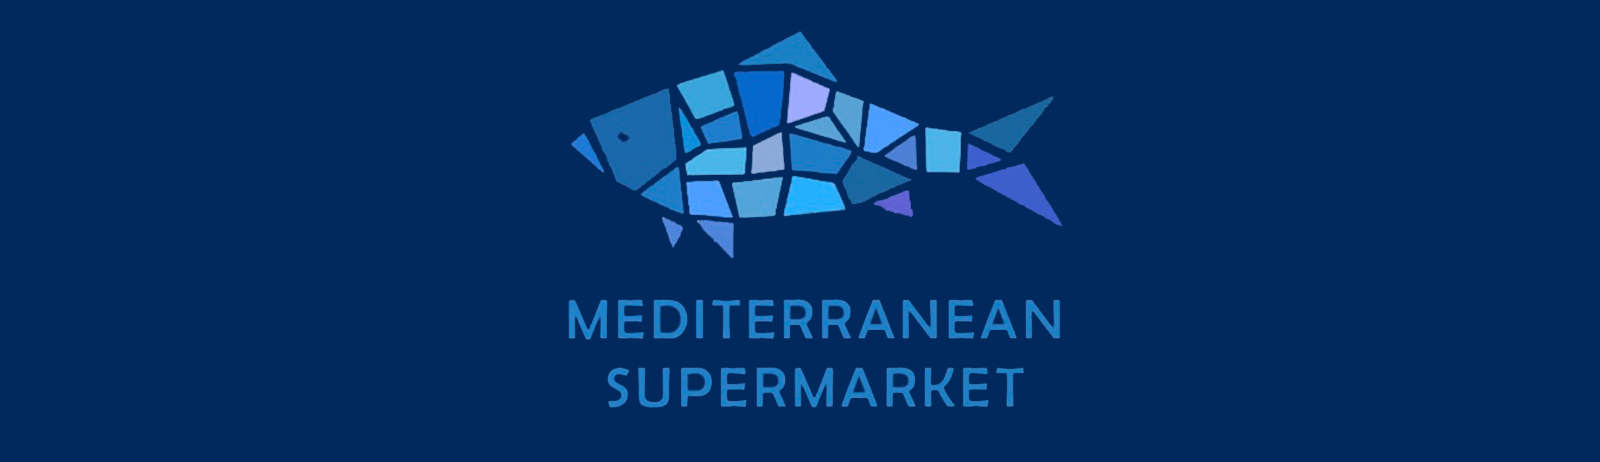 Mediterranean Supermarket